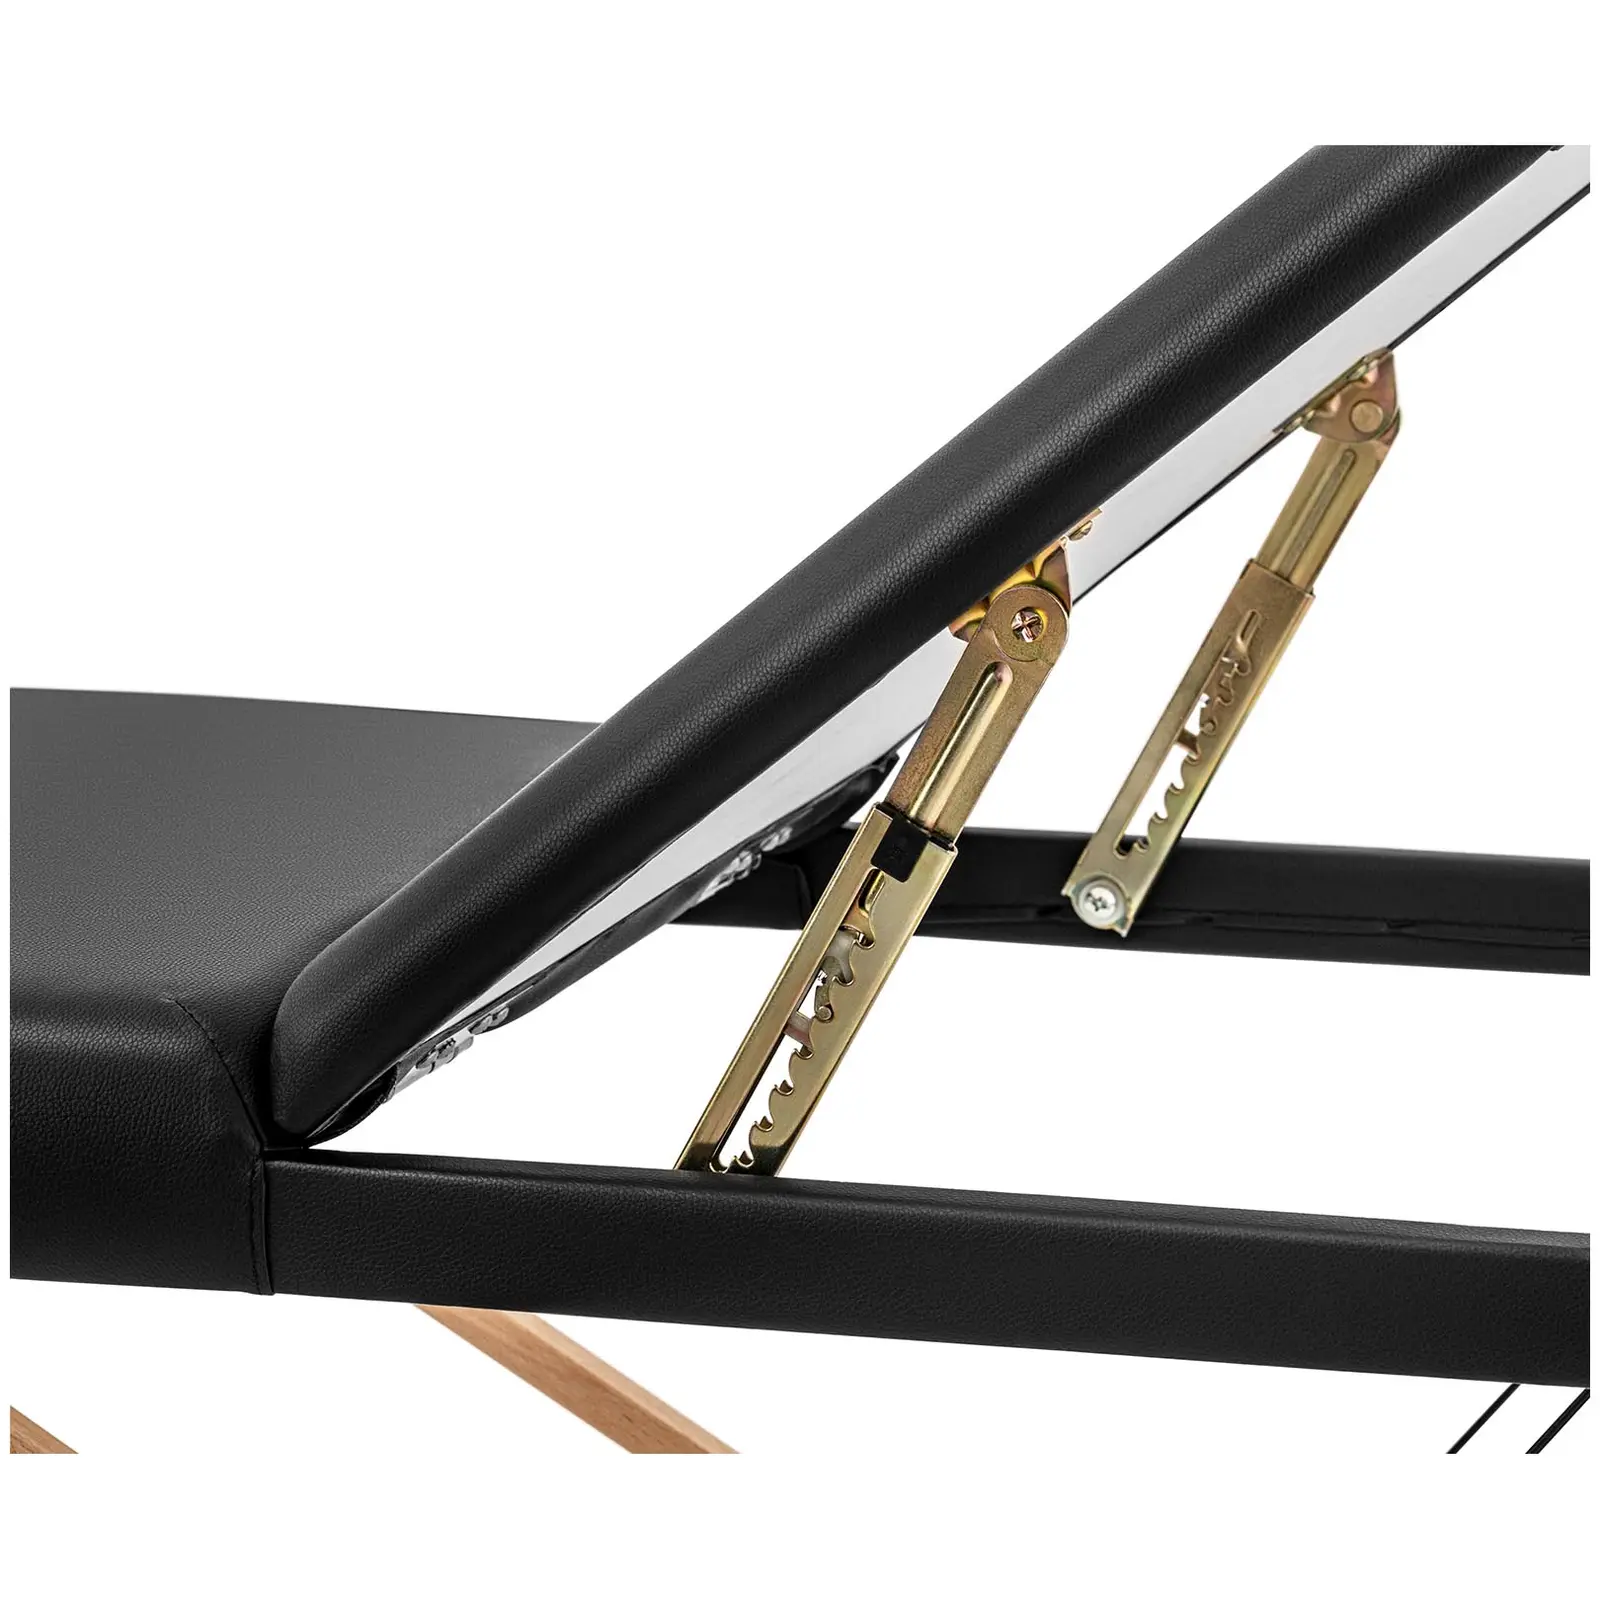 B-varer Sammenleggbart massasjebord - ekstra bredt (70 cm) - skråstilt fotstøtte - bøketre - svart